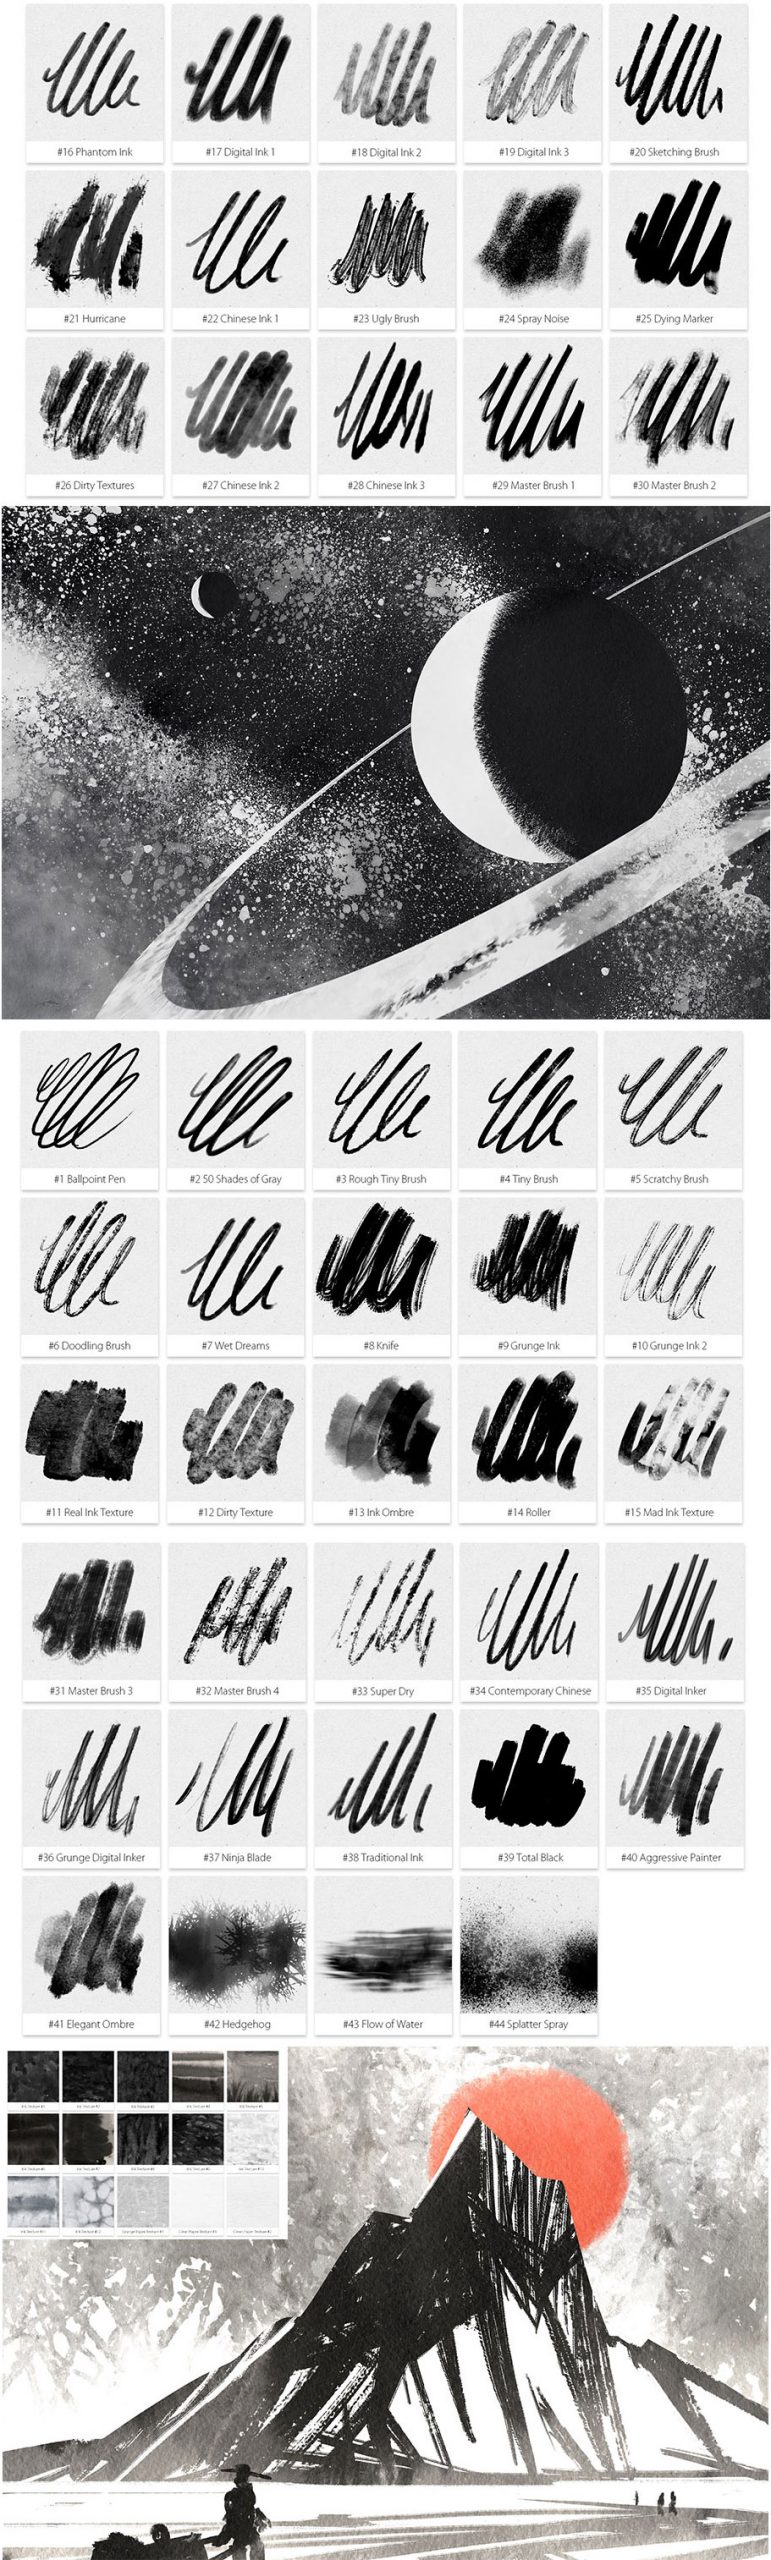 44 Ink Photoshop Digital Painting Brushes